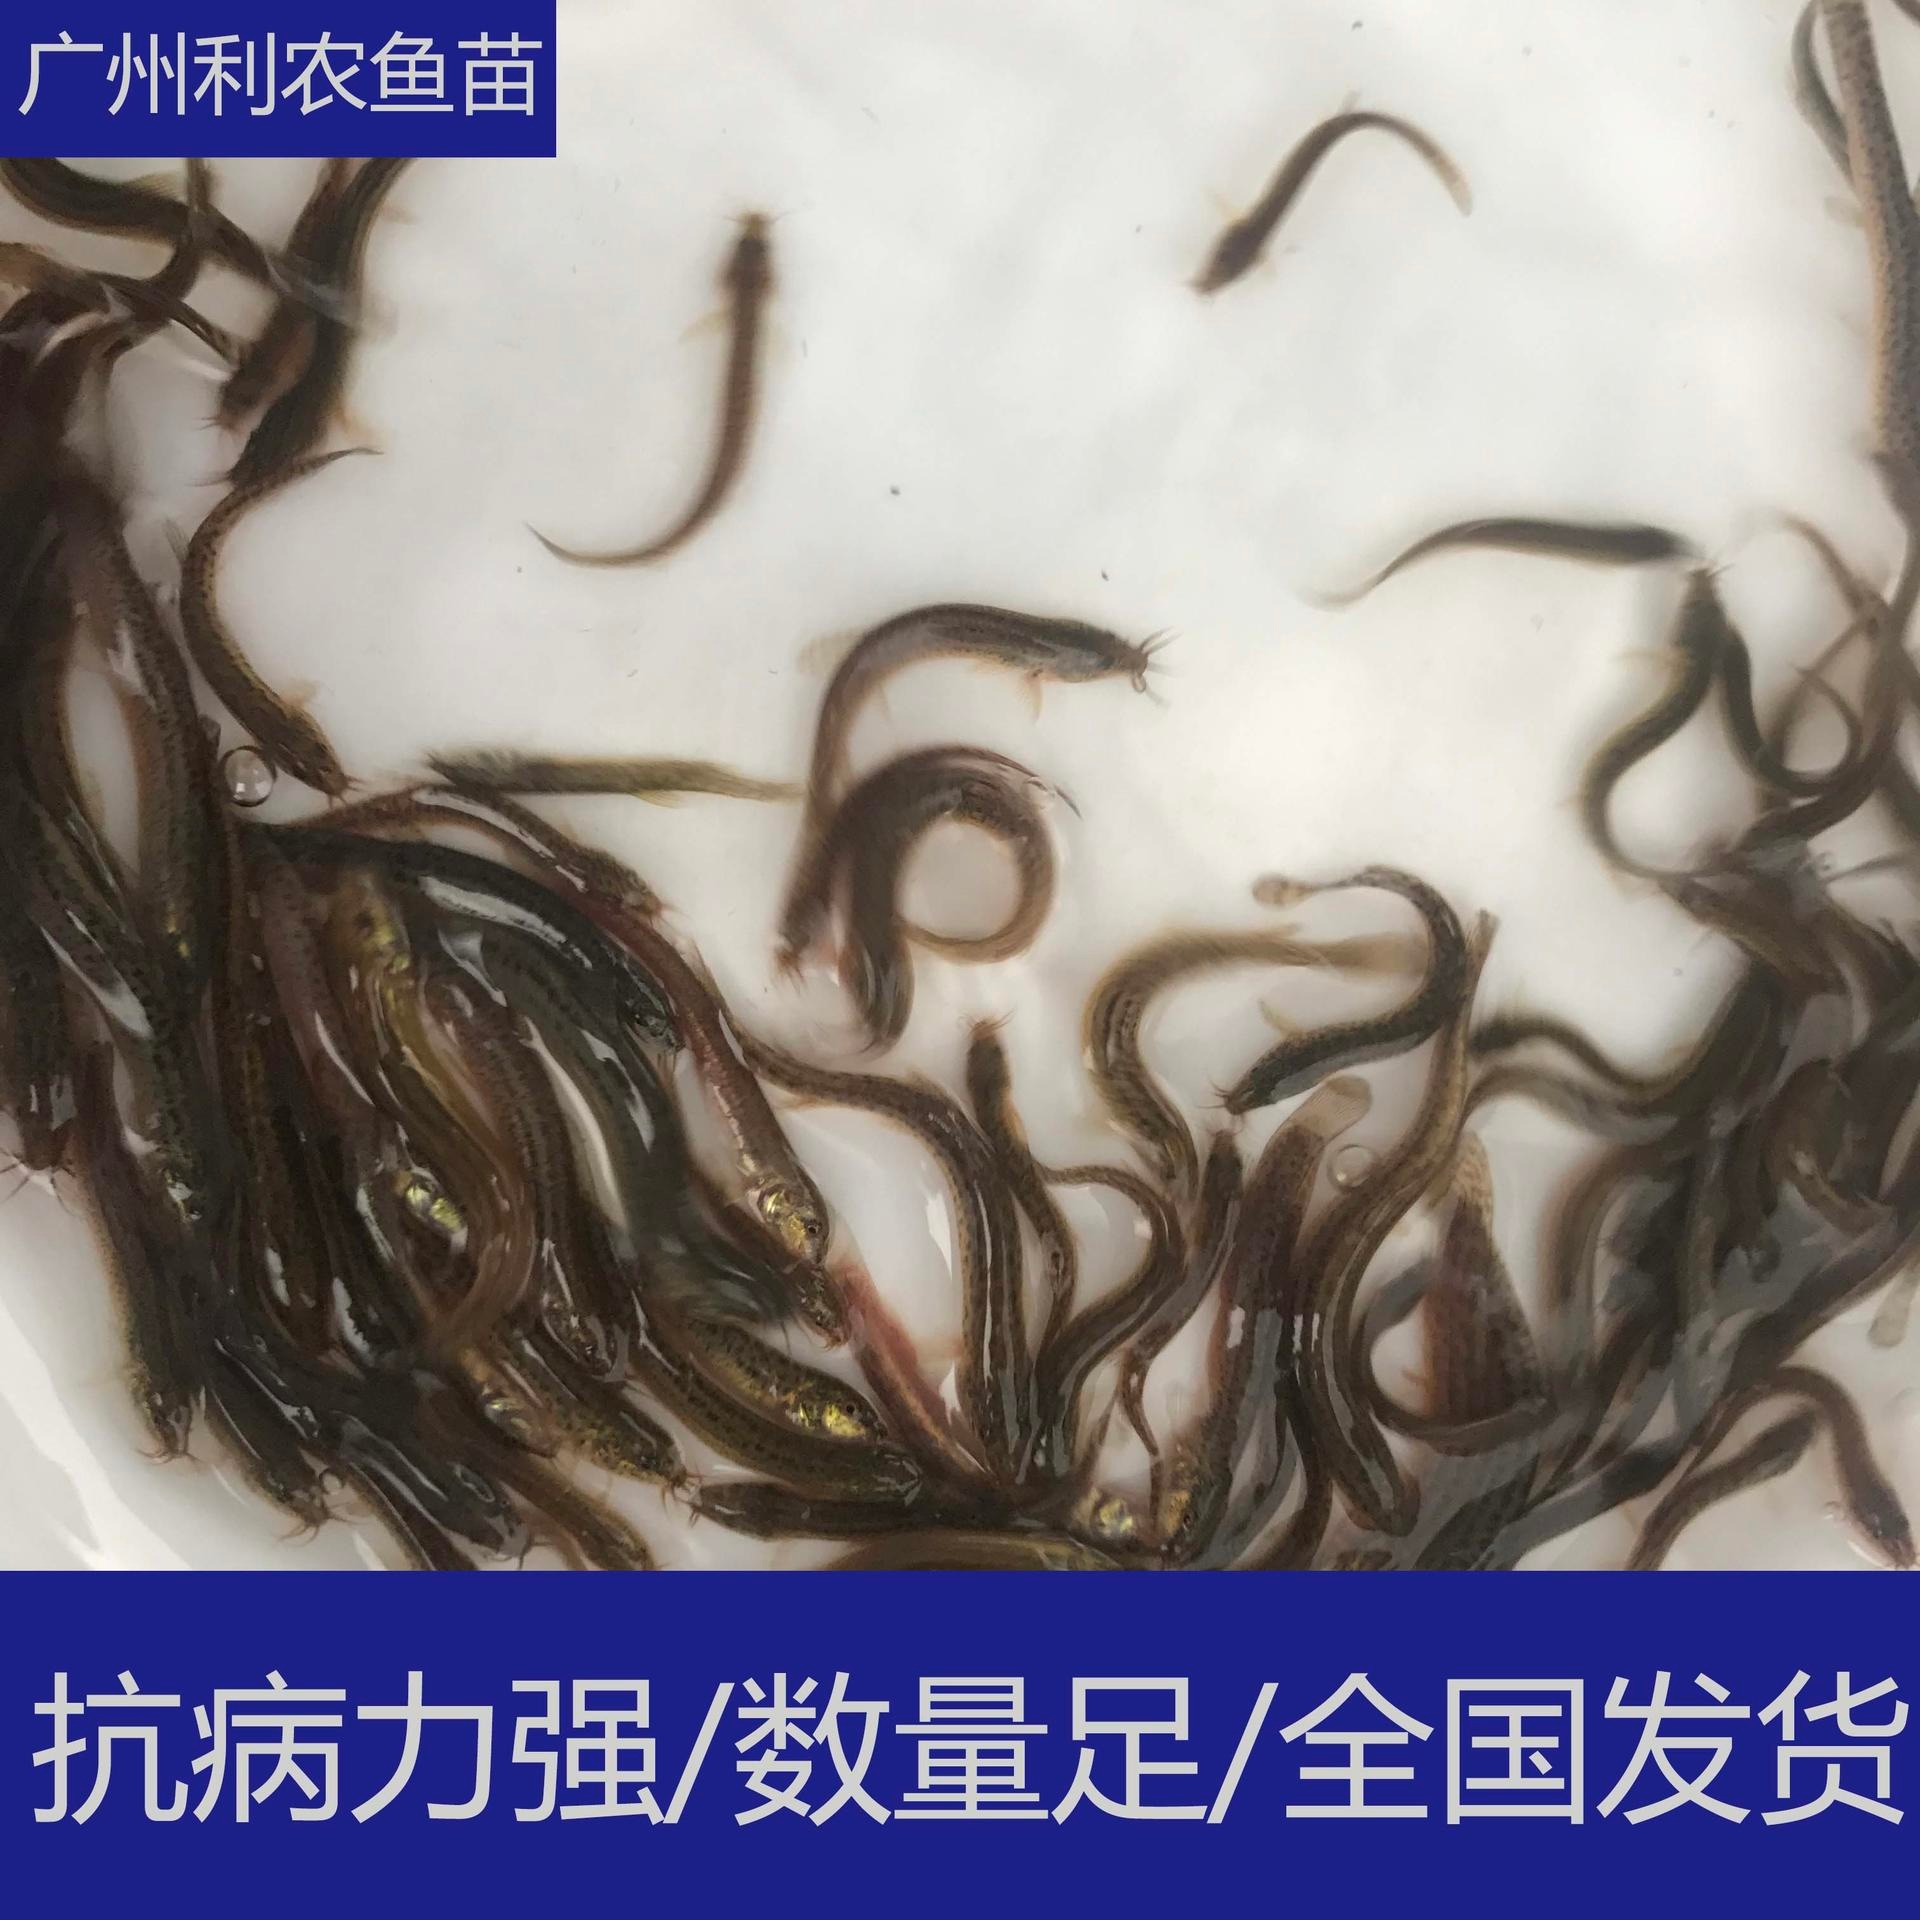 养殖支持 贵州安顺台湾泥鳅苗出售 3-4cm泥鳅鱼苗养殖场